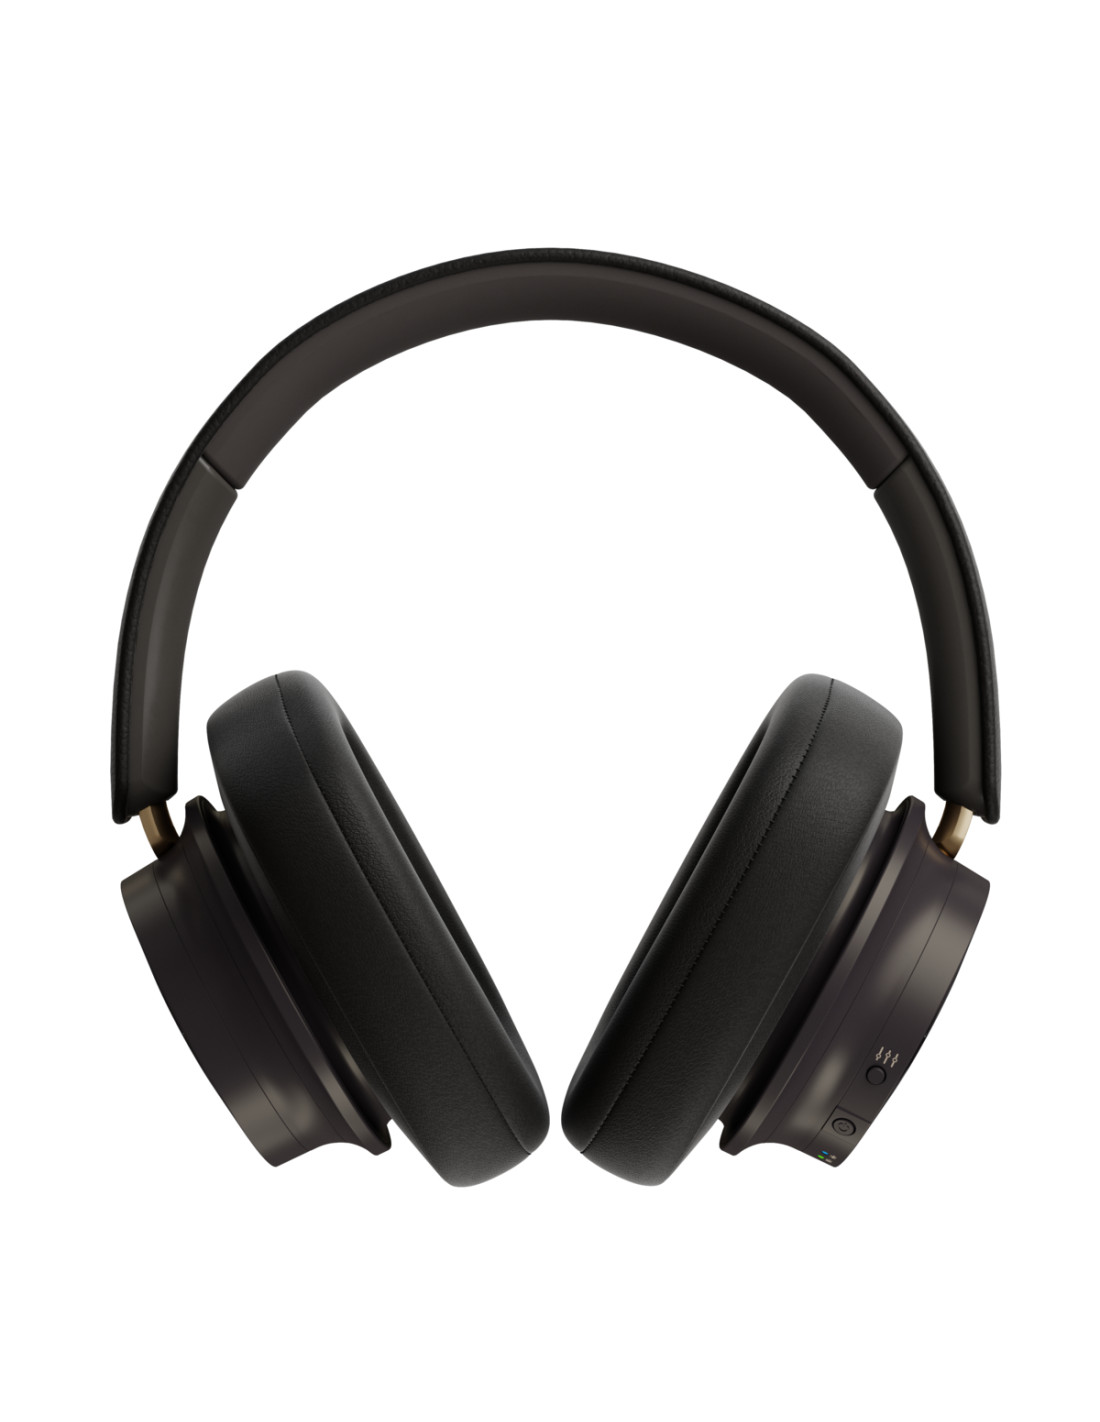 iO-12, los auriculares HiFi de DALI, ya disponibles en España y Portugal -  Sound&Pixel